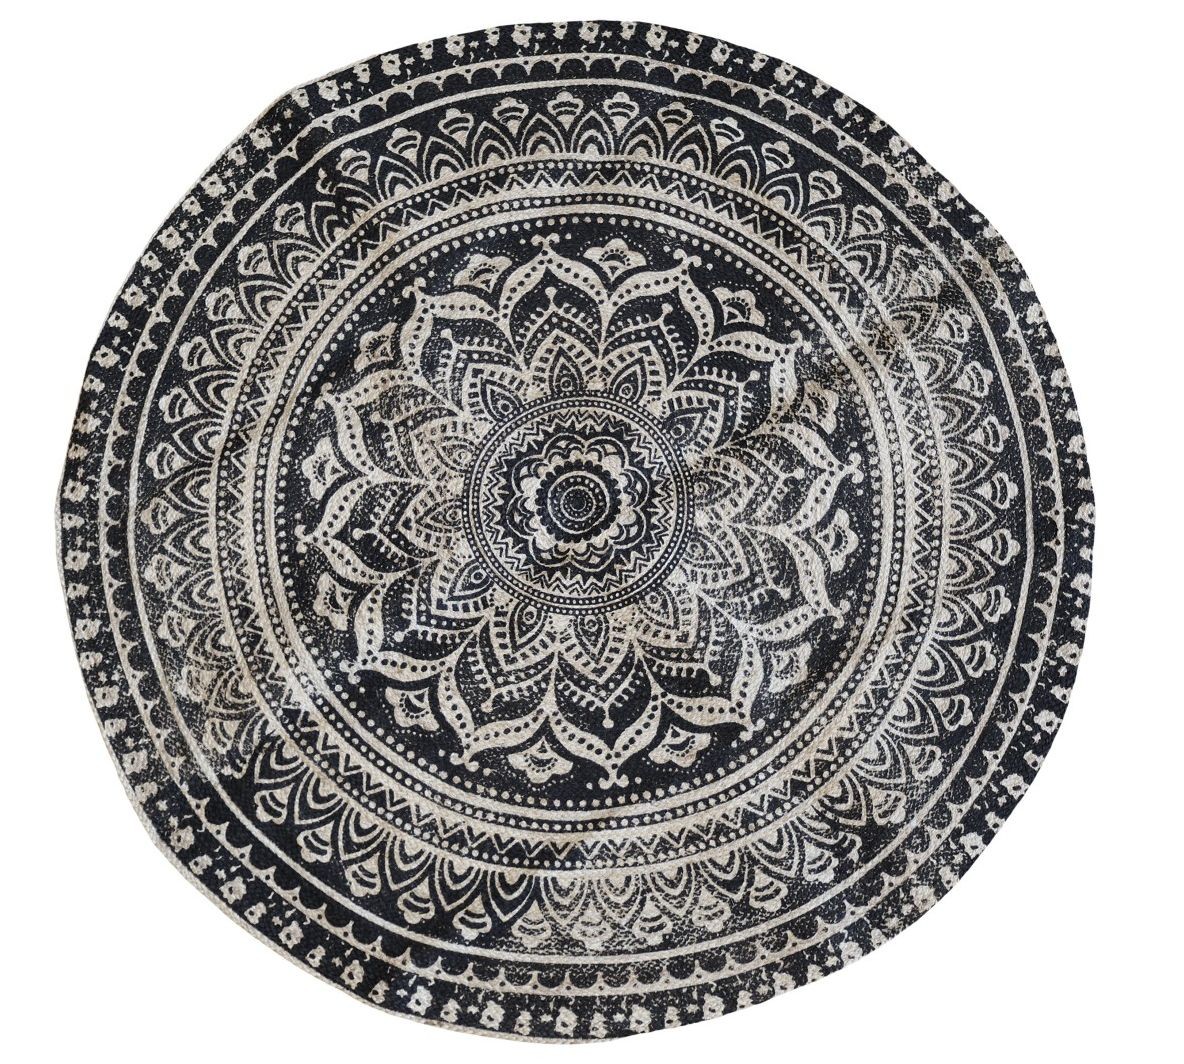 Přírodně - černý kulatý jutový koberec s ornamentem Ornié - Ø 160 cm Chic Antique